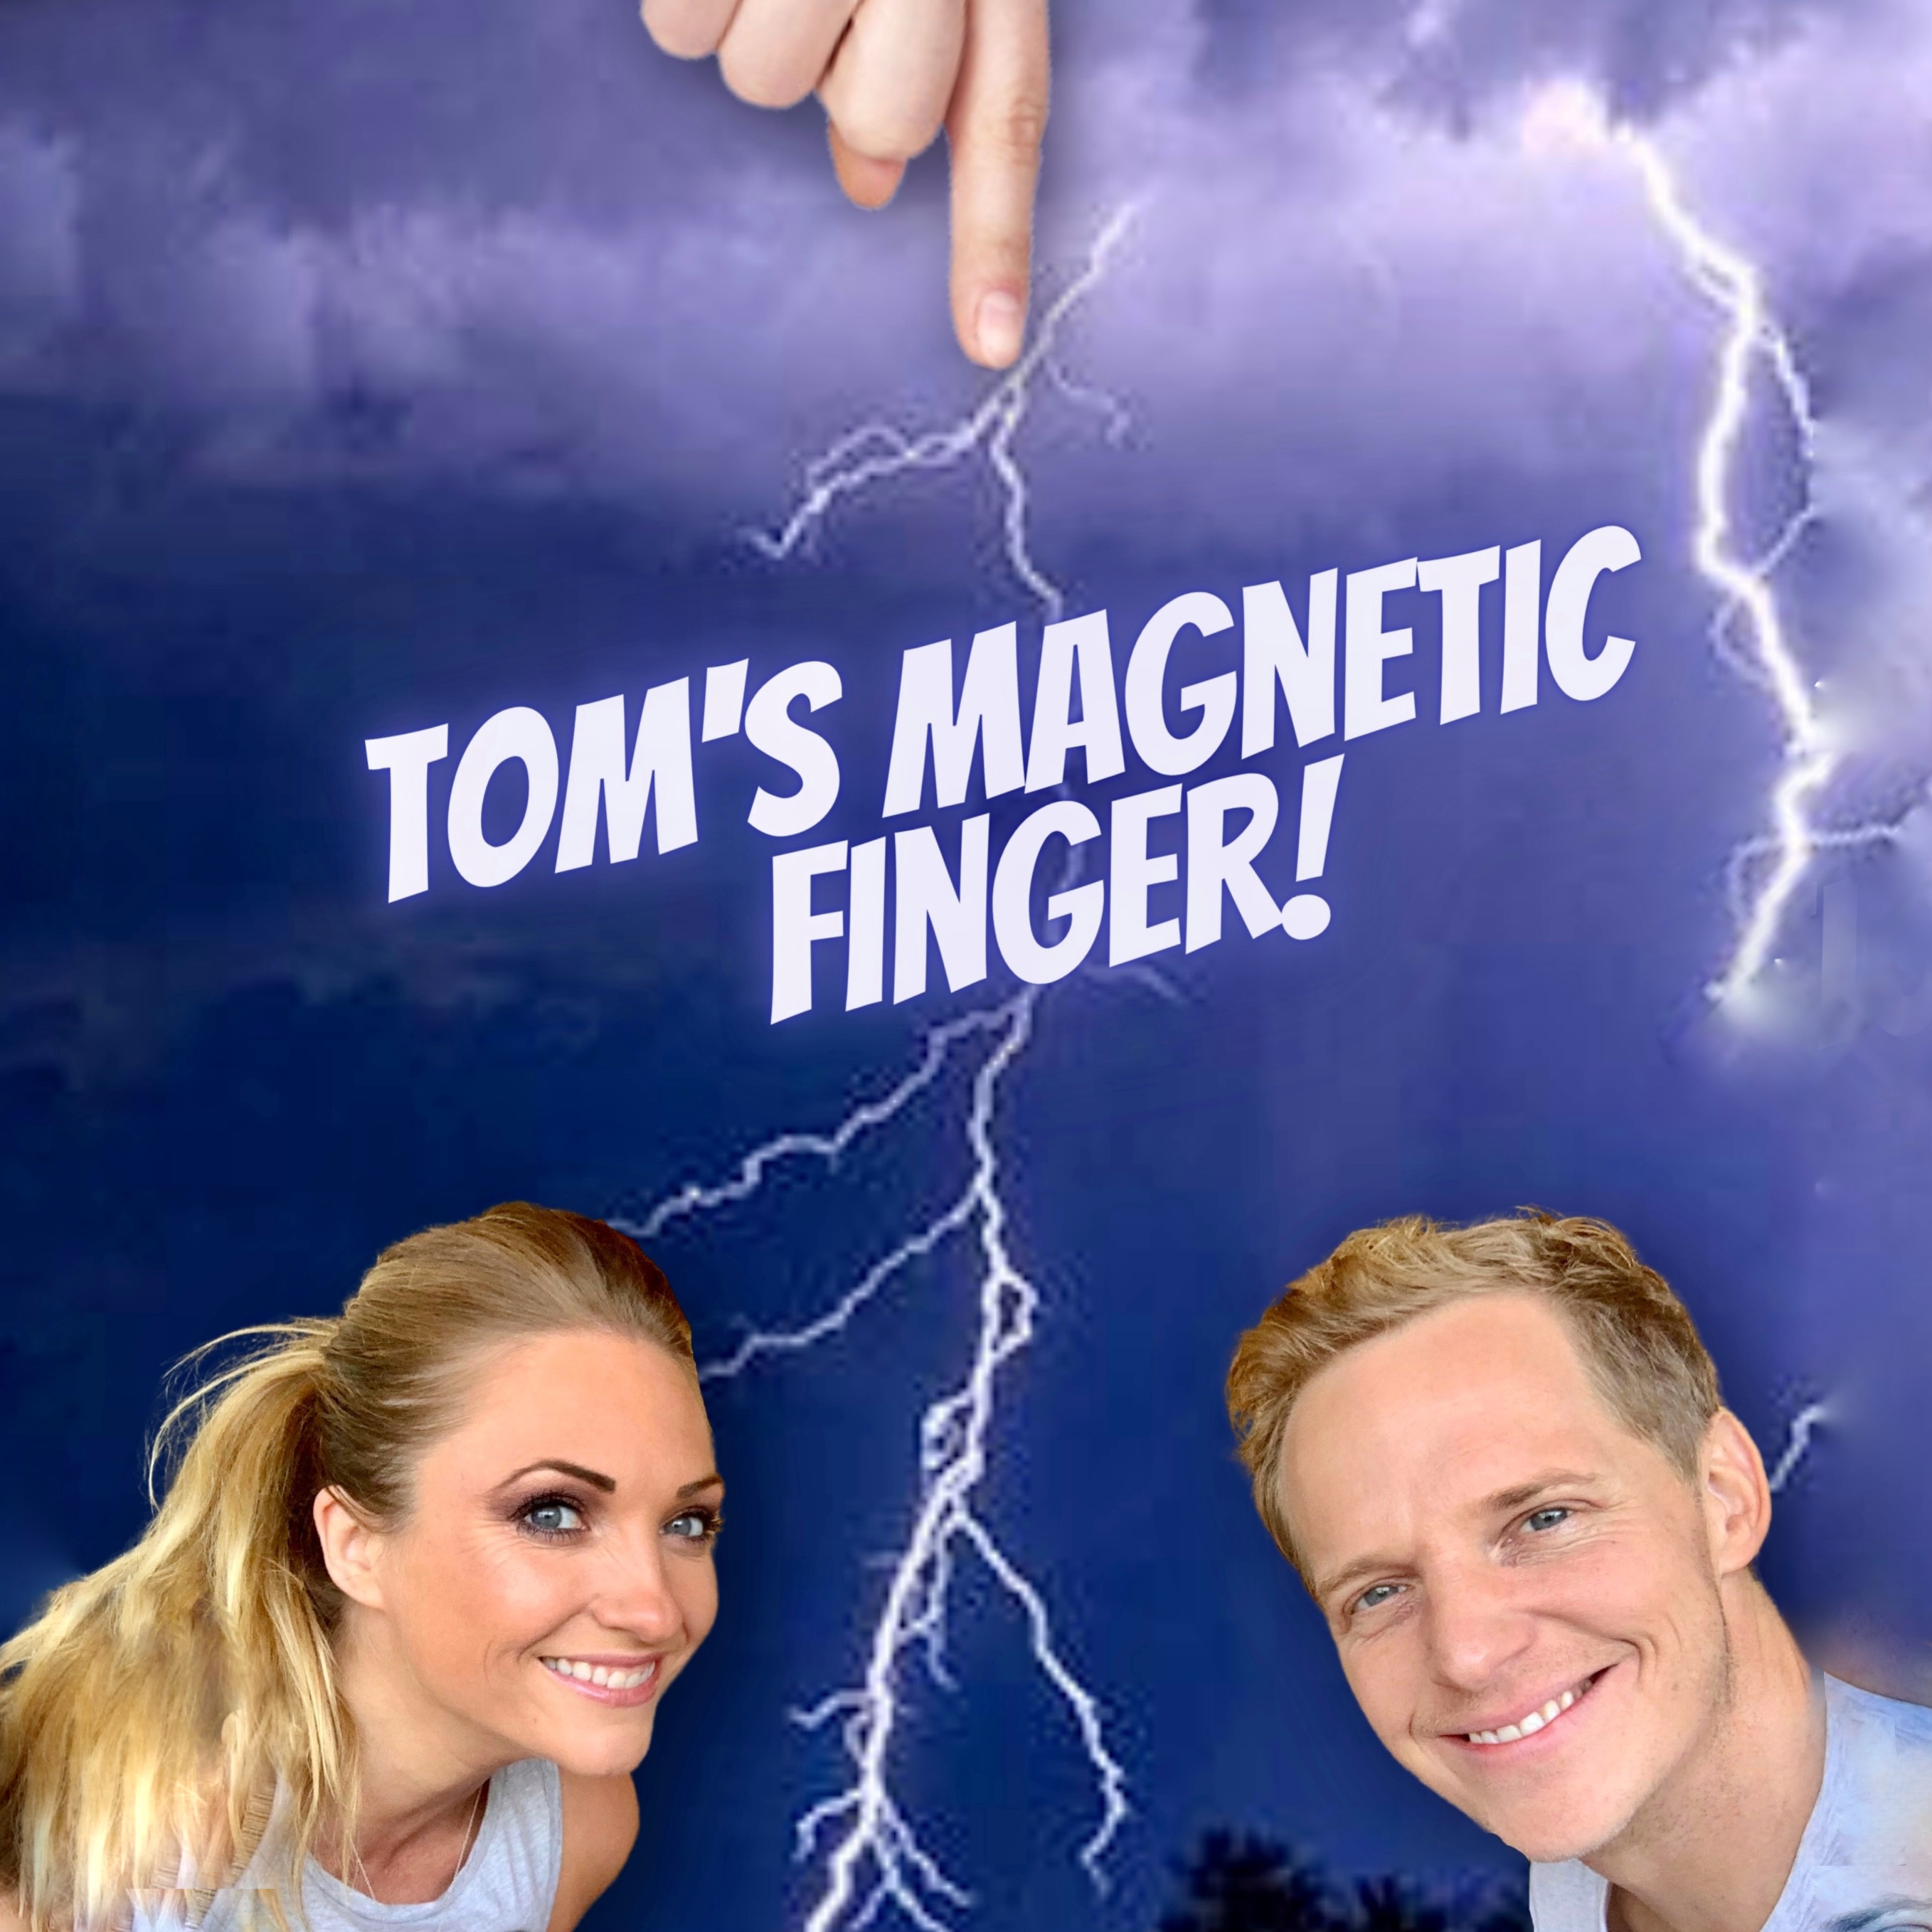 Tom's Magnetic Finger